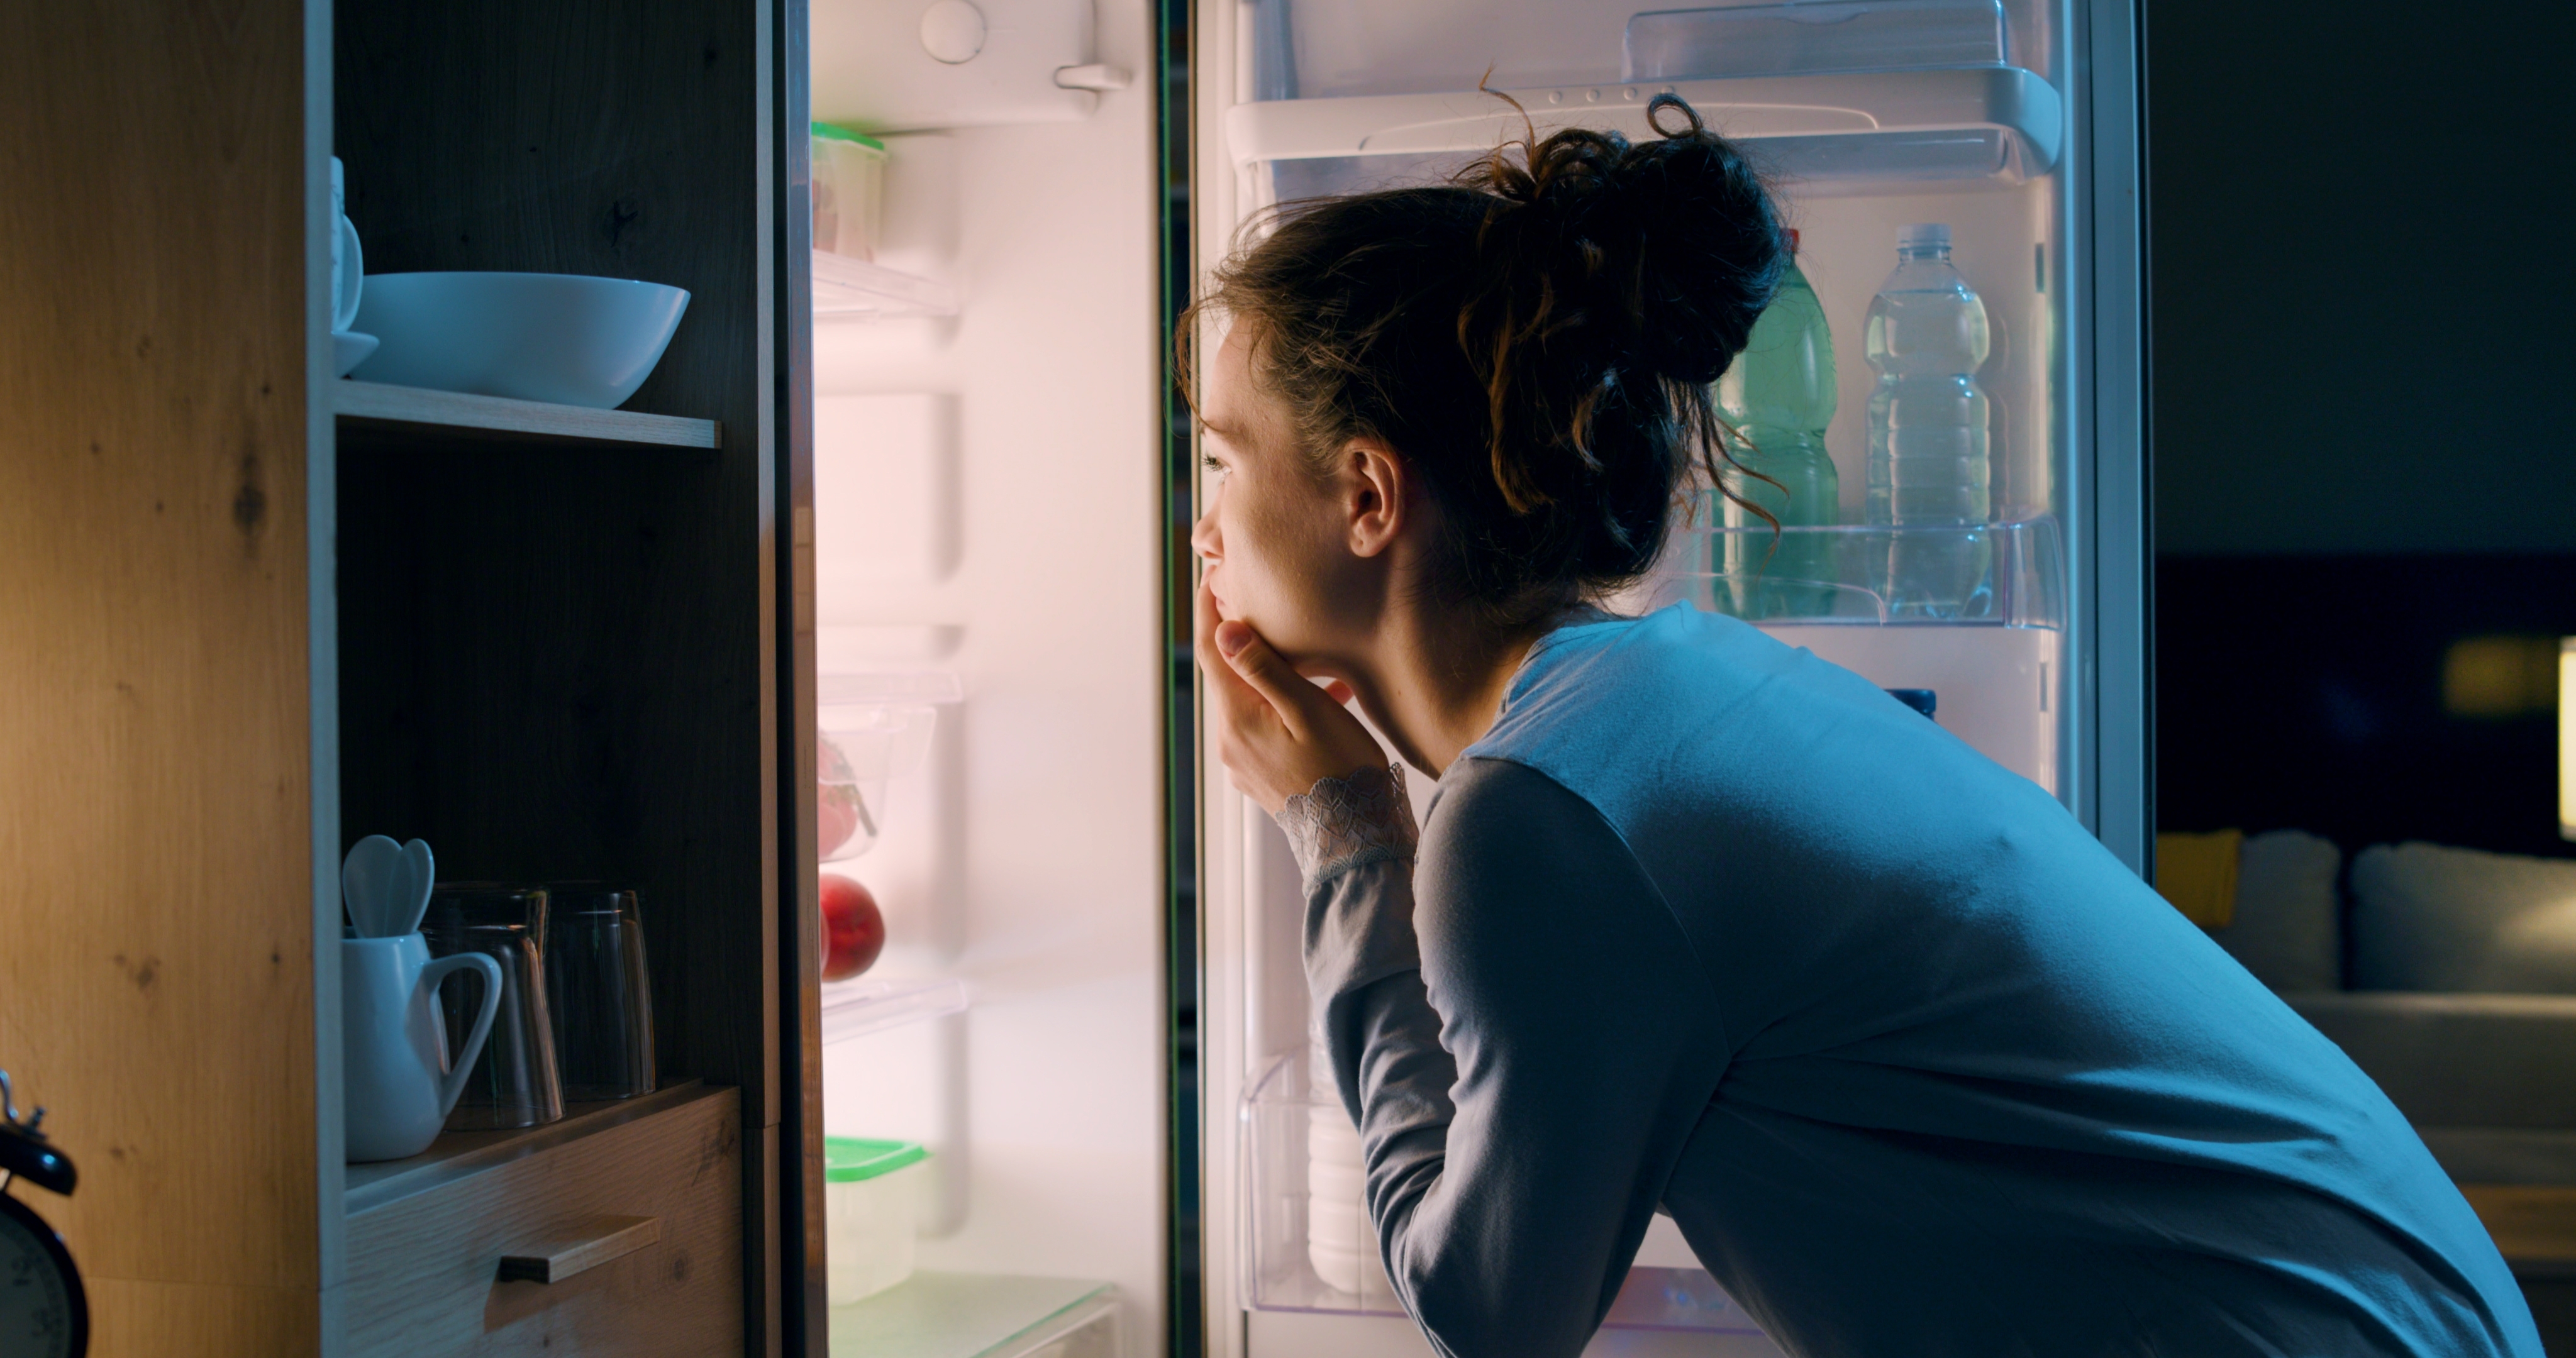 Woman looking in the fridge | Source: Shutterstock